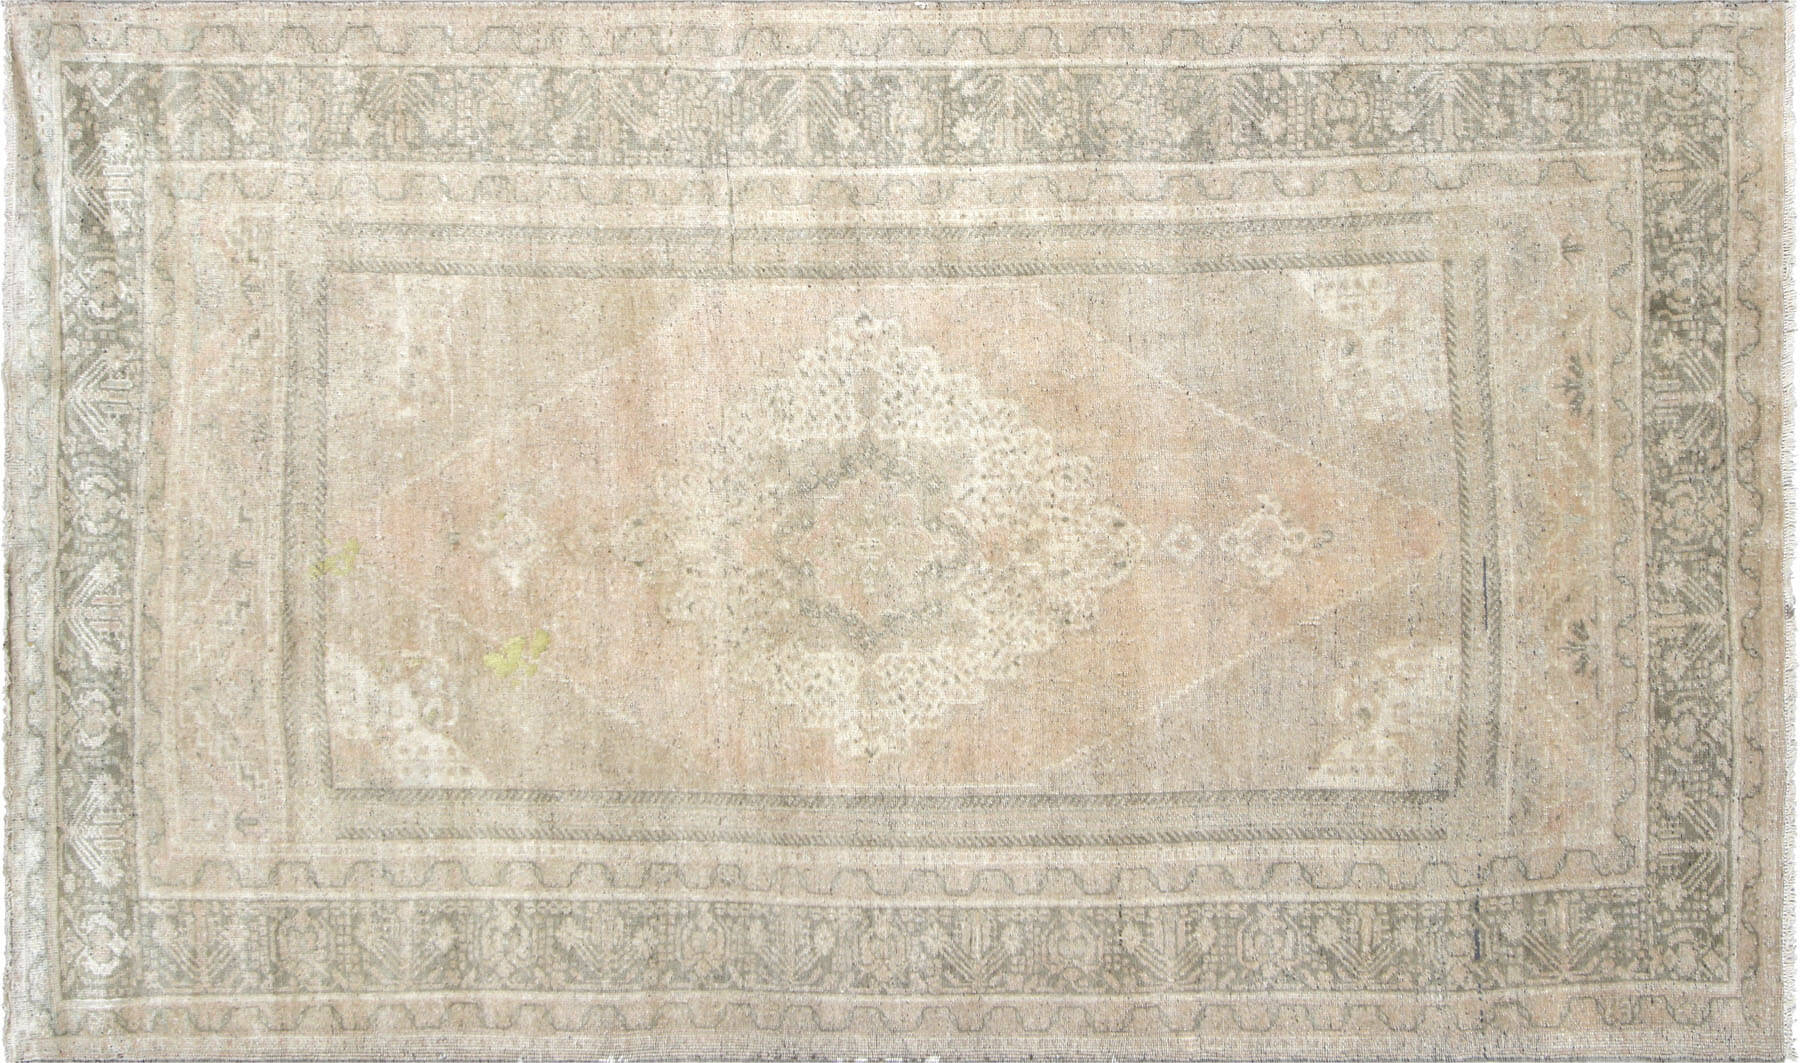 Vintage Turkish Oushak Carpet - 6'3" x 10'2"